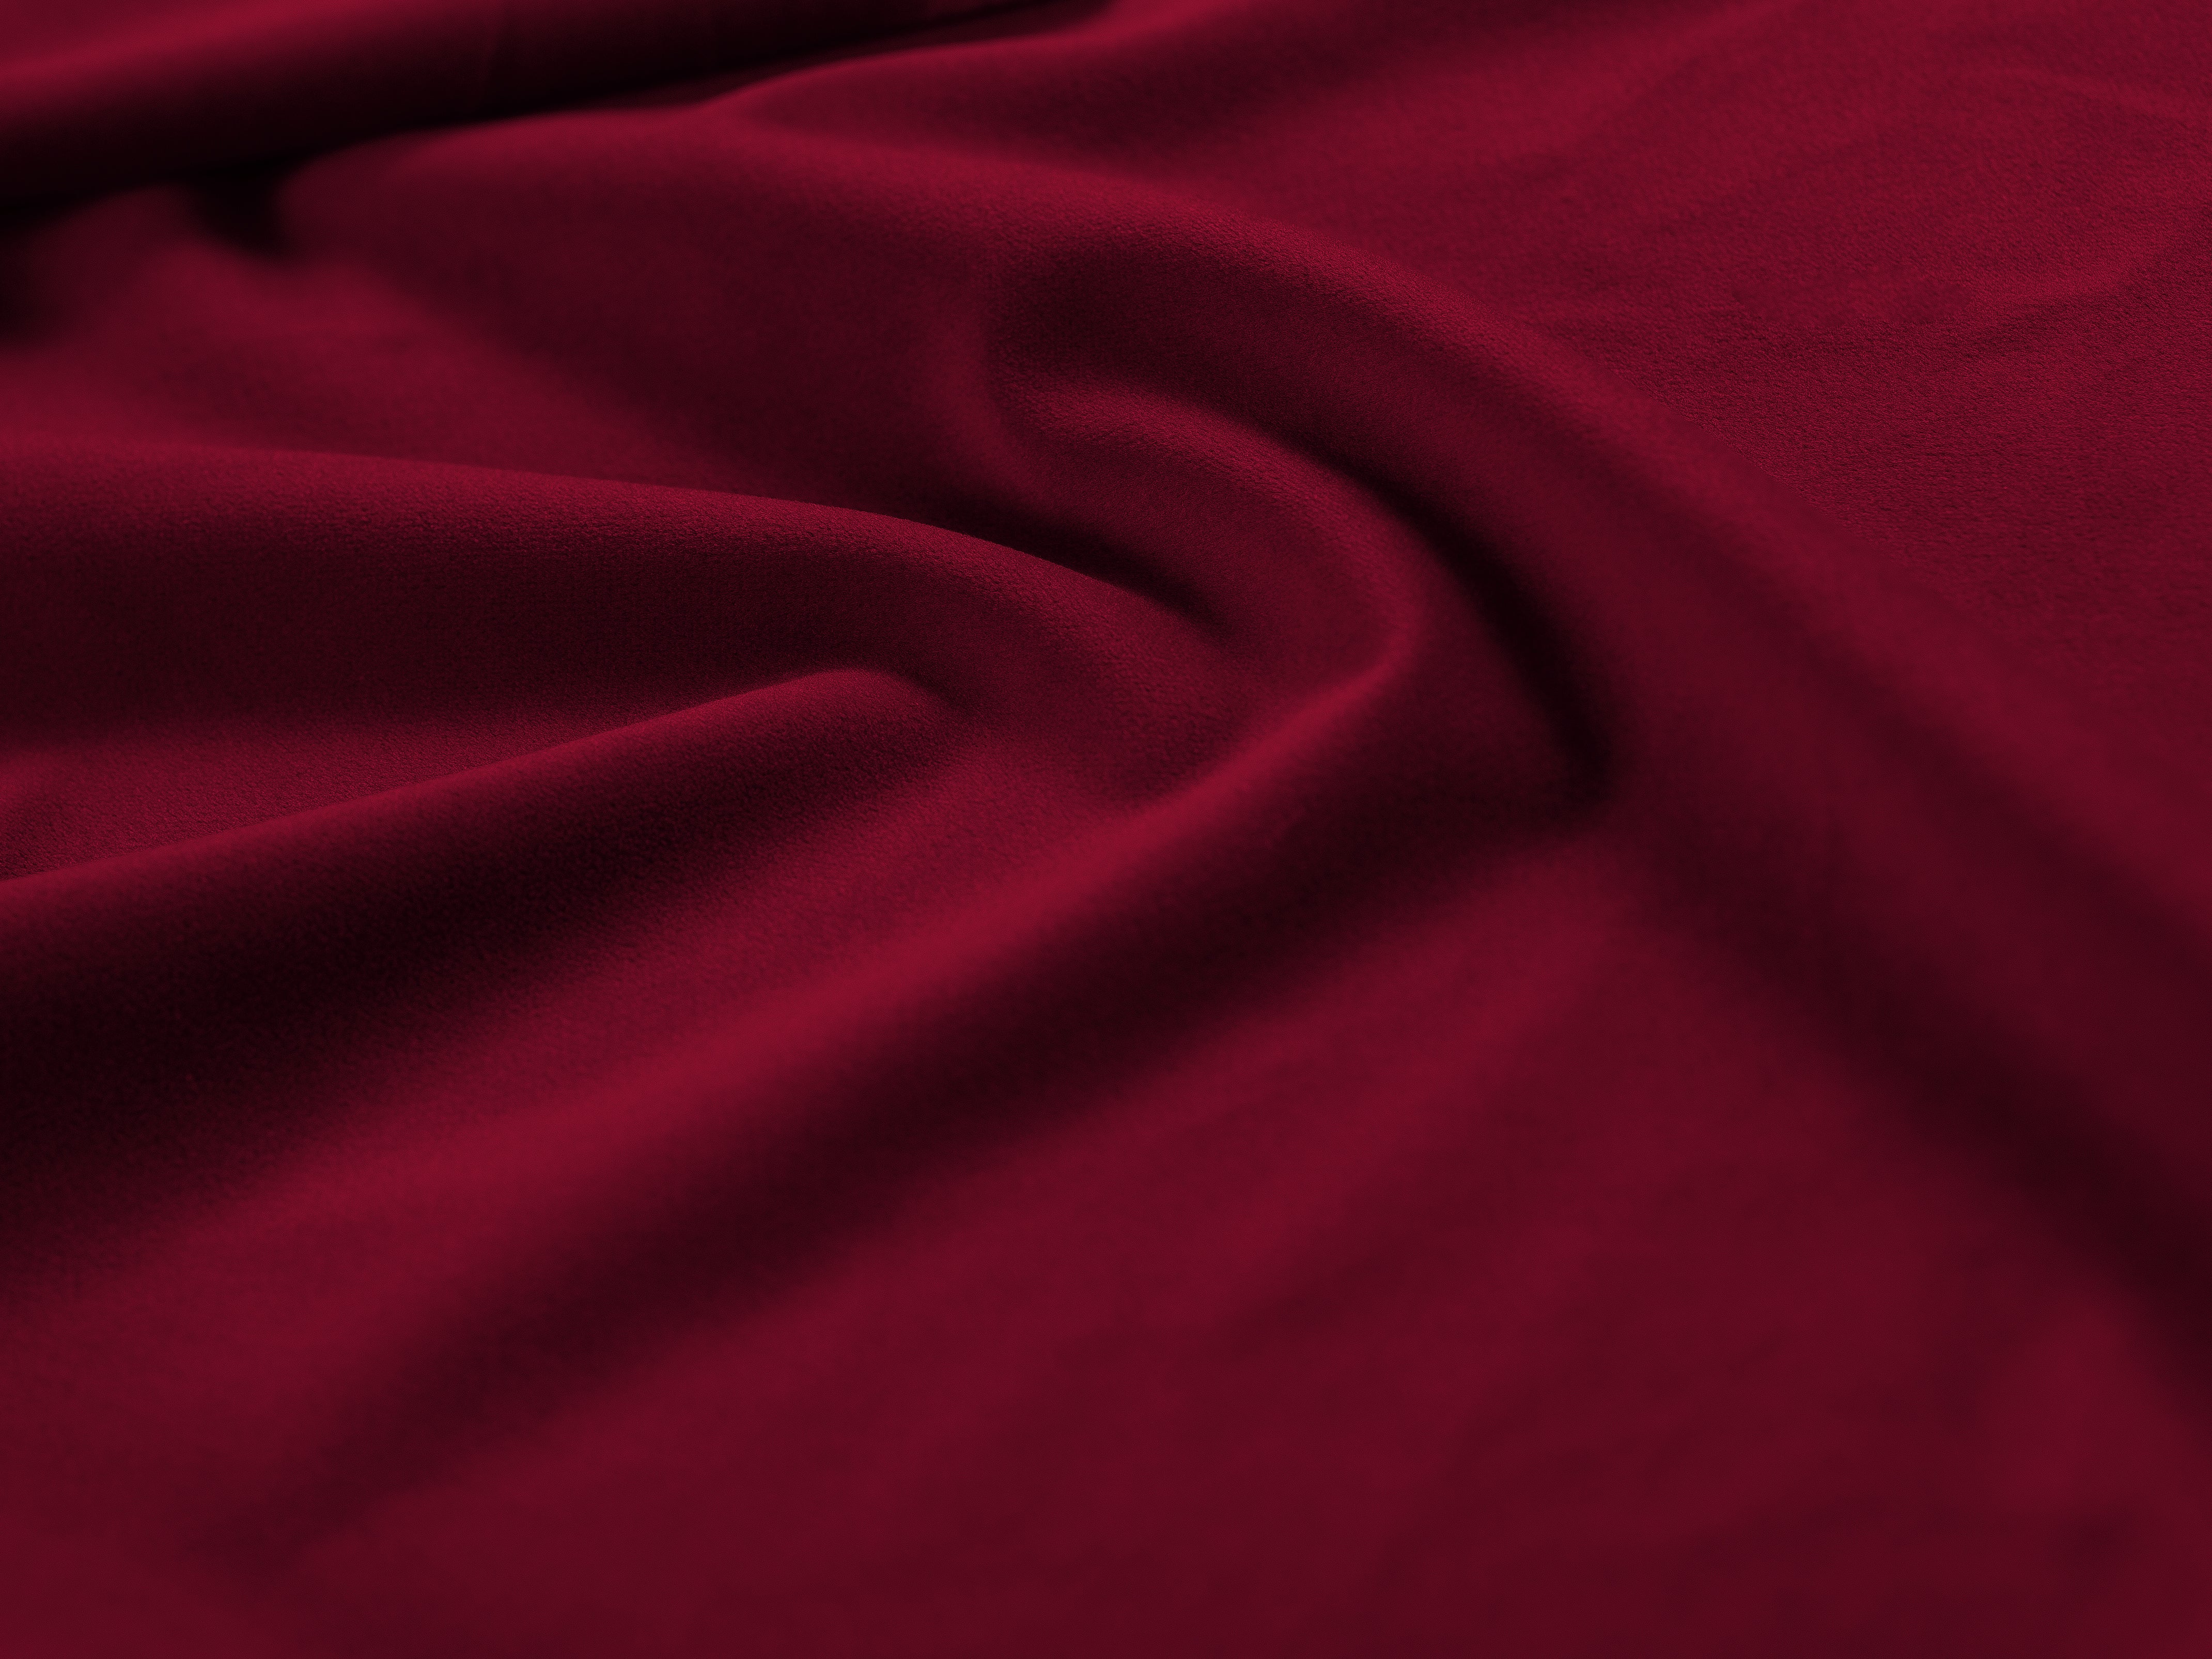 Sofa aksamitna panoramiczna lewostronna 7-osobowa BALI czerwony z czarną podstawą Cosmopolitan Design    Eye on Design